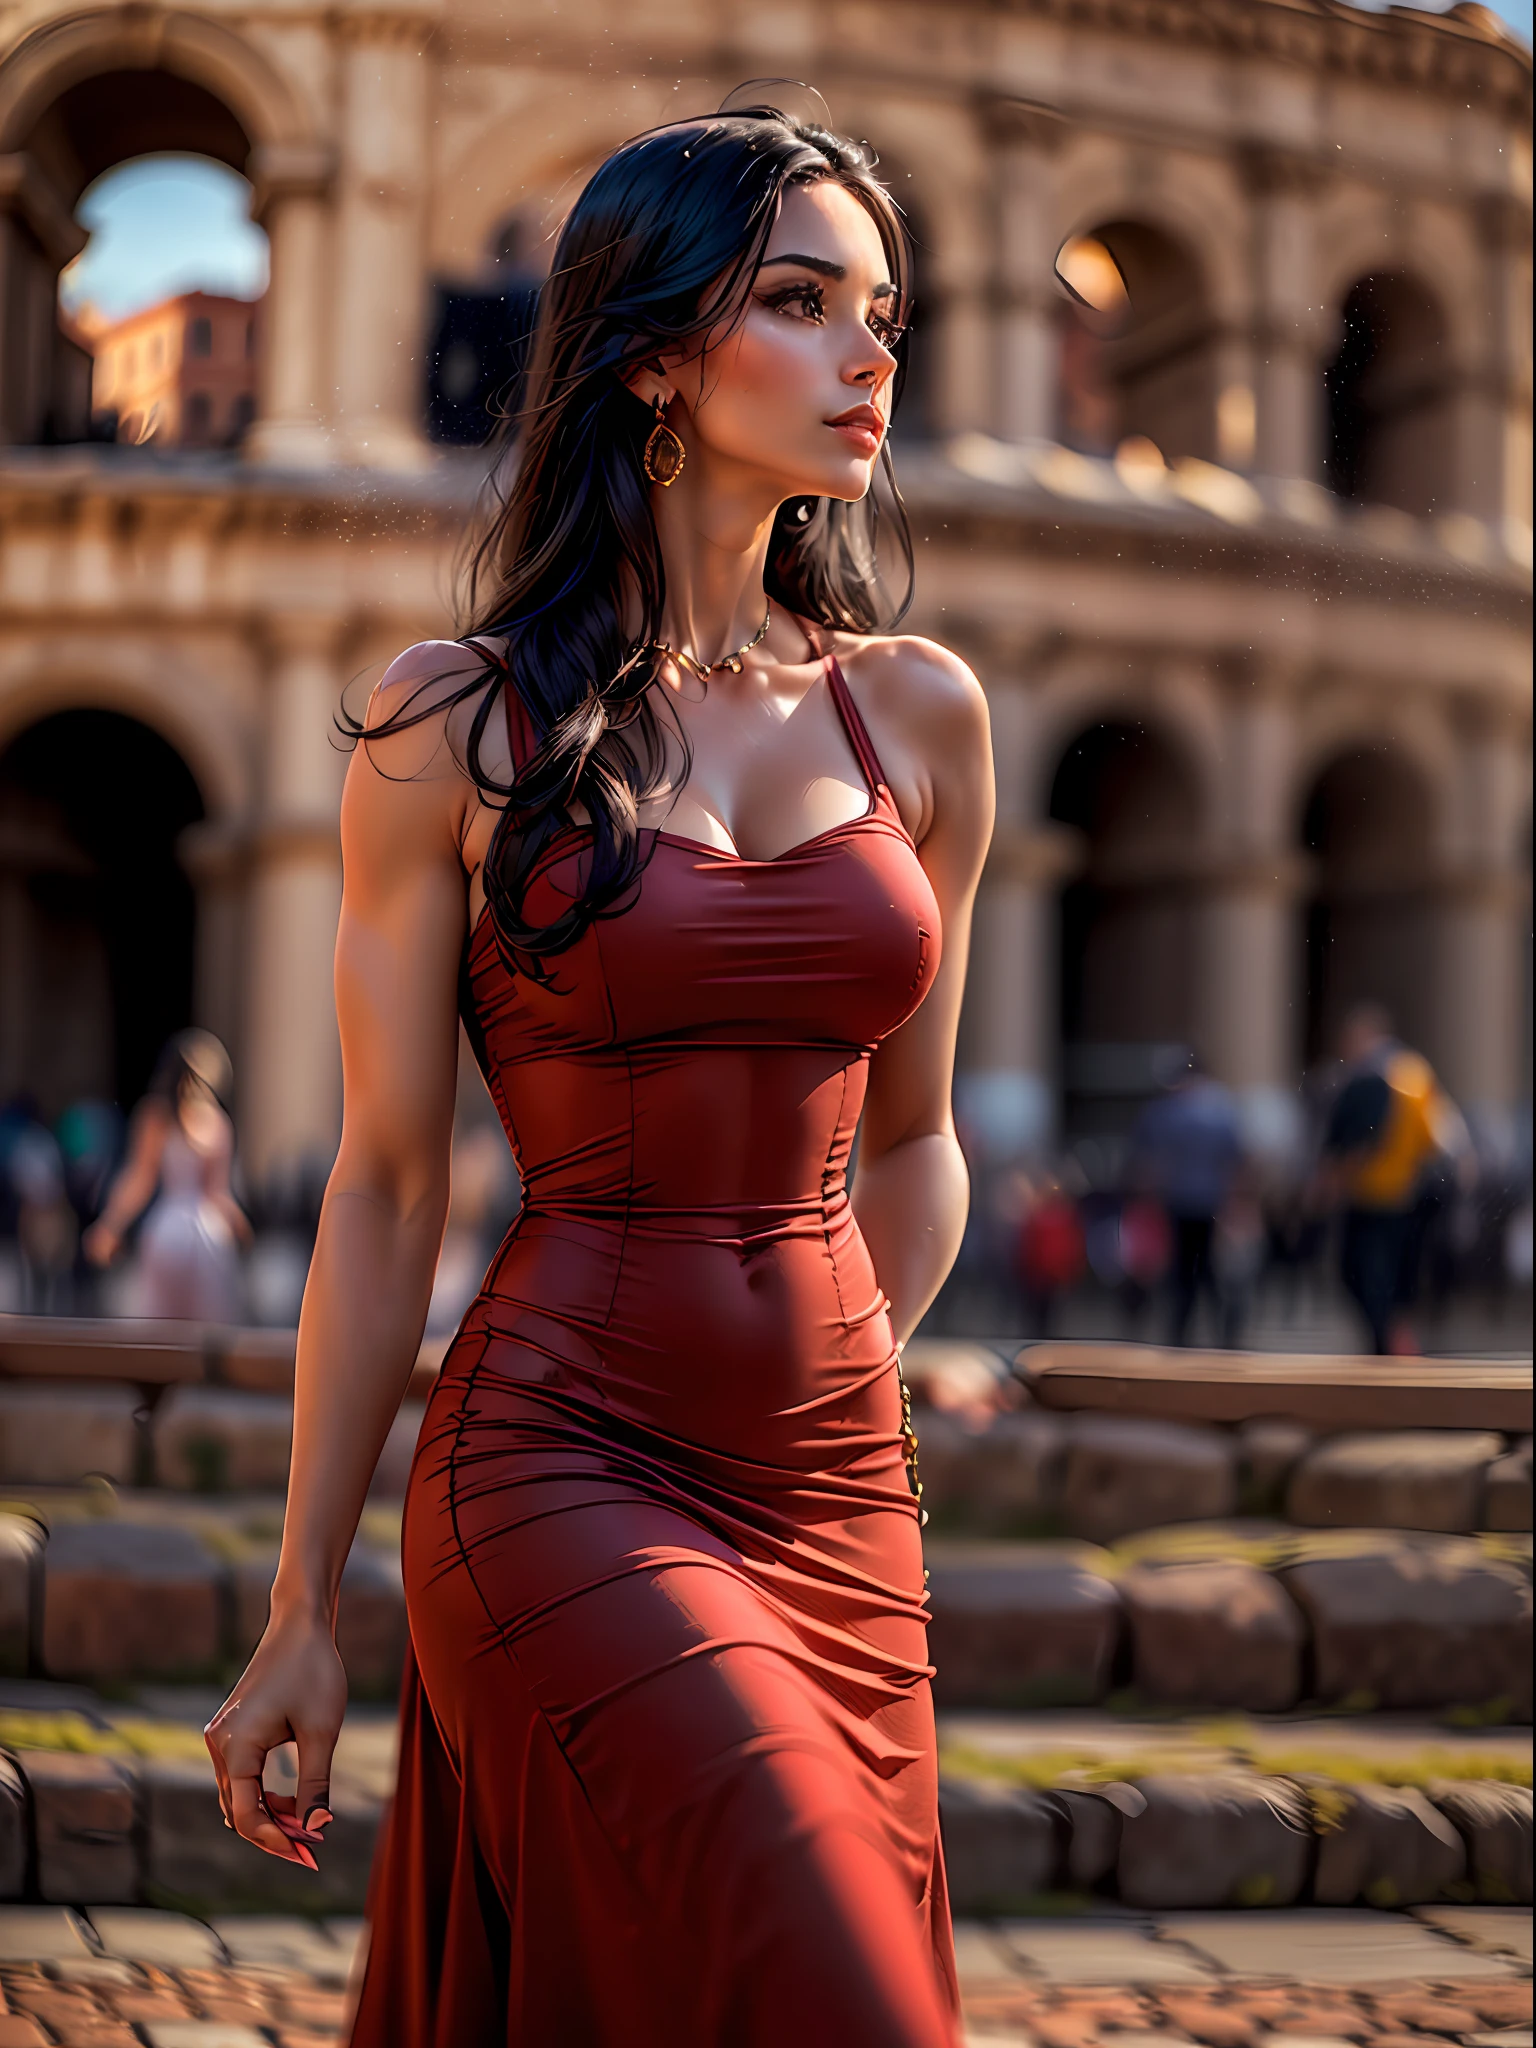 (шедевр, высокое разрешение, фотореалистичный:1.4), (Запечатлев сногсшибательную женщину с длинными черными волосами, в облегающем красном платье, которое подчеркивает ее привлекательное телосложение:1.3), (элегантное платье, облегающее ее изгибы и демонстрирующее ее соблазнительную фигуру:1.2), (ее уверенное и уравновешенное поведение, когда она прогуливается возле культового Колизея в Риме:1.3), (Беззеркальная камера Canon EOS R5.:1.2), (в сочетании с Canon RF 85mm f/1.2L УСМ объектив:1.2), (запечатлеть каждую деталь ее пленительного присутствия и прекрасного окружения:1.2), (Колизей, возвышающийся на заднем плане, Символ древней истории и величия:1.2), (Ярко-красный цвет ее платья контрастирует с древней каменной архитектурой:1.2), (Теплый и солнечный день, с мягким солнечным светом, улучшающим сцену:1.1), (восхитительная фотография женщины, источающей элегантность и очарование, знакомство с исторической красотой Рима:1.2).